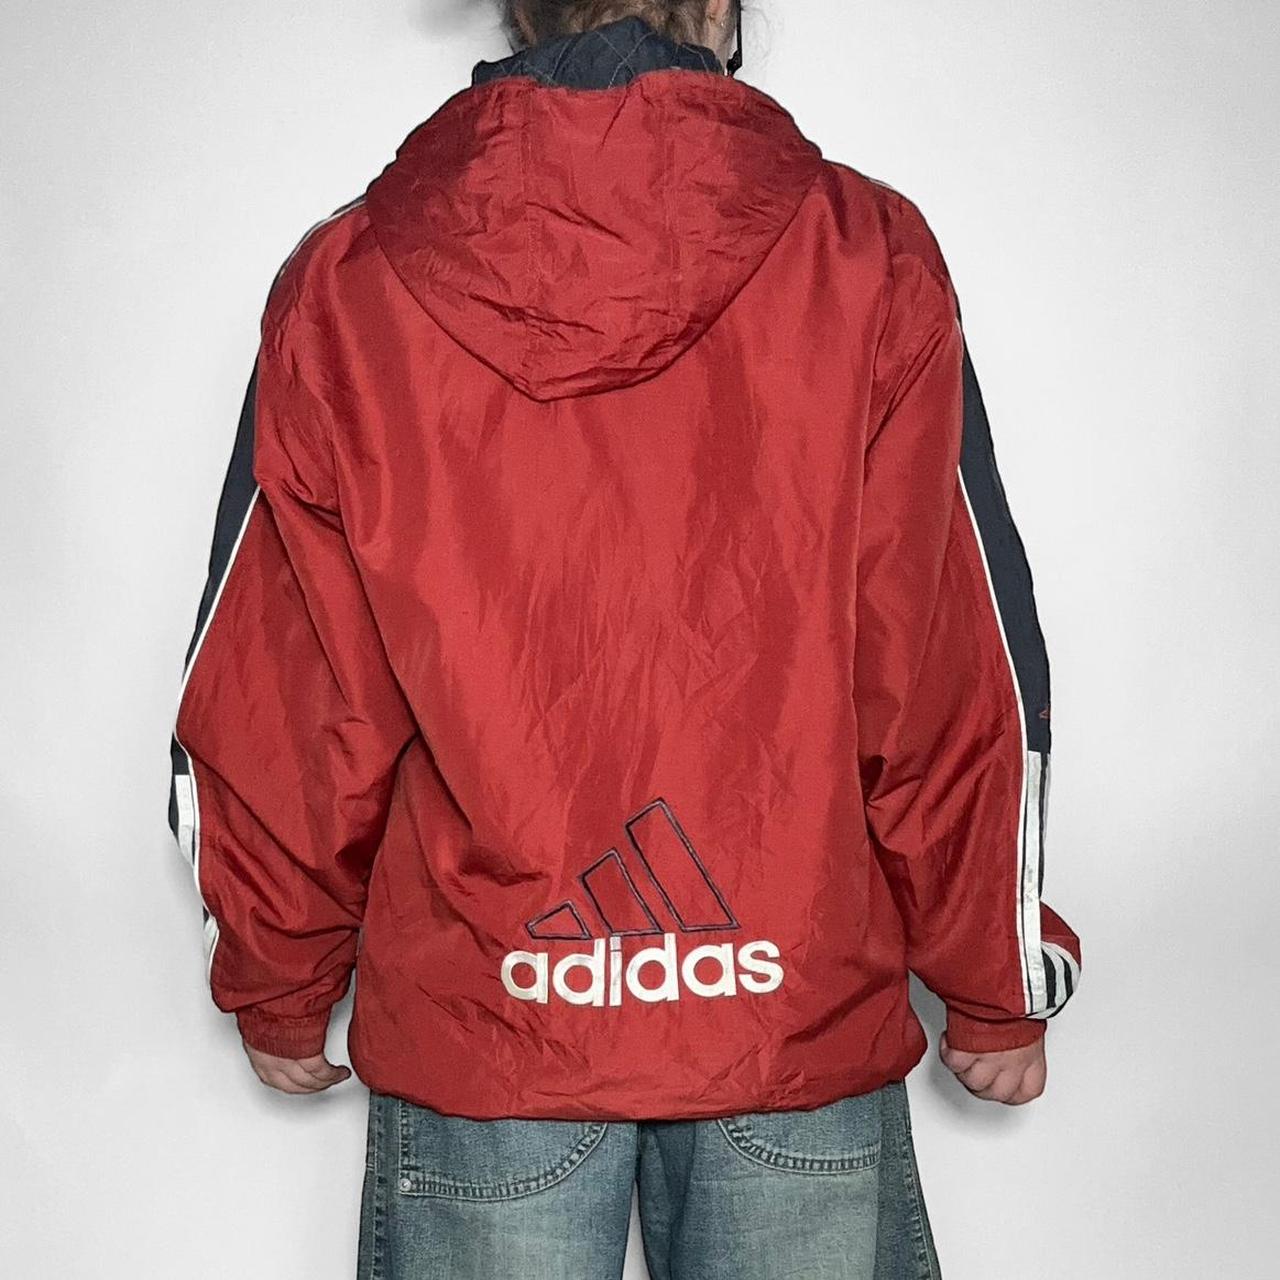 Vintage 90s Adidas red zip up streetwear windbreaker jacket